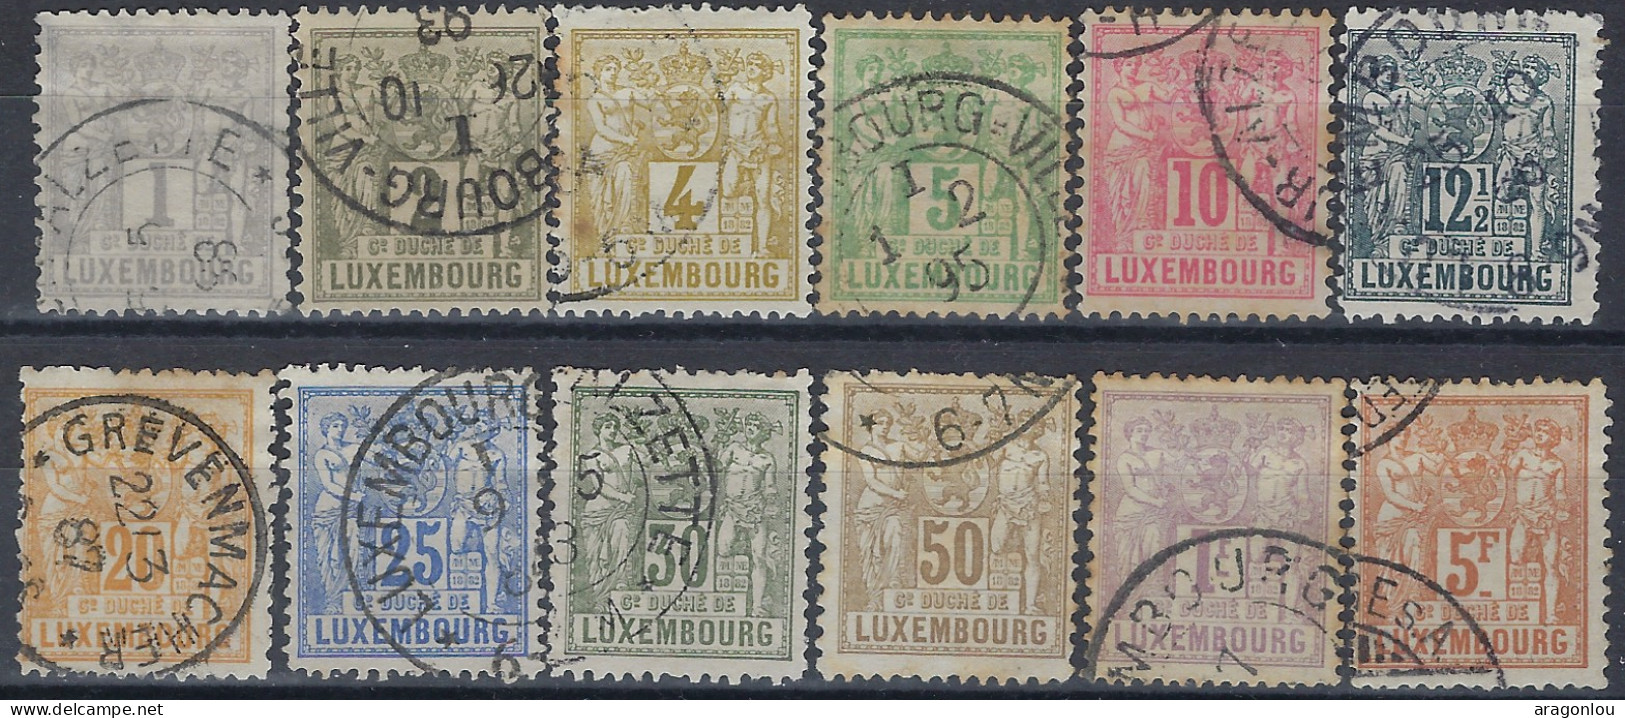 Luxembourg - Luxemburg - Timbres -  1882   Allégorie  Série   ° - 1882 Allégorie